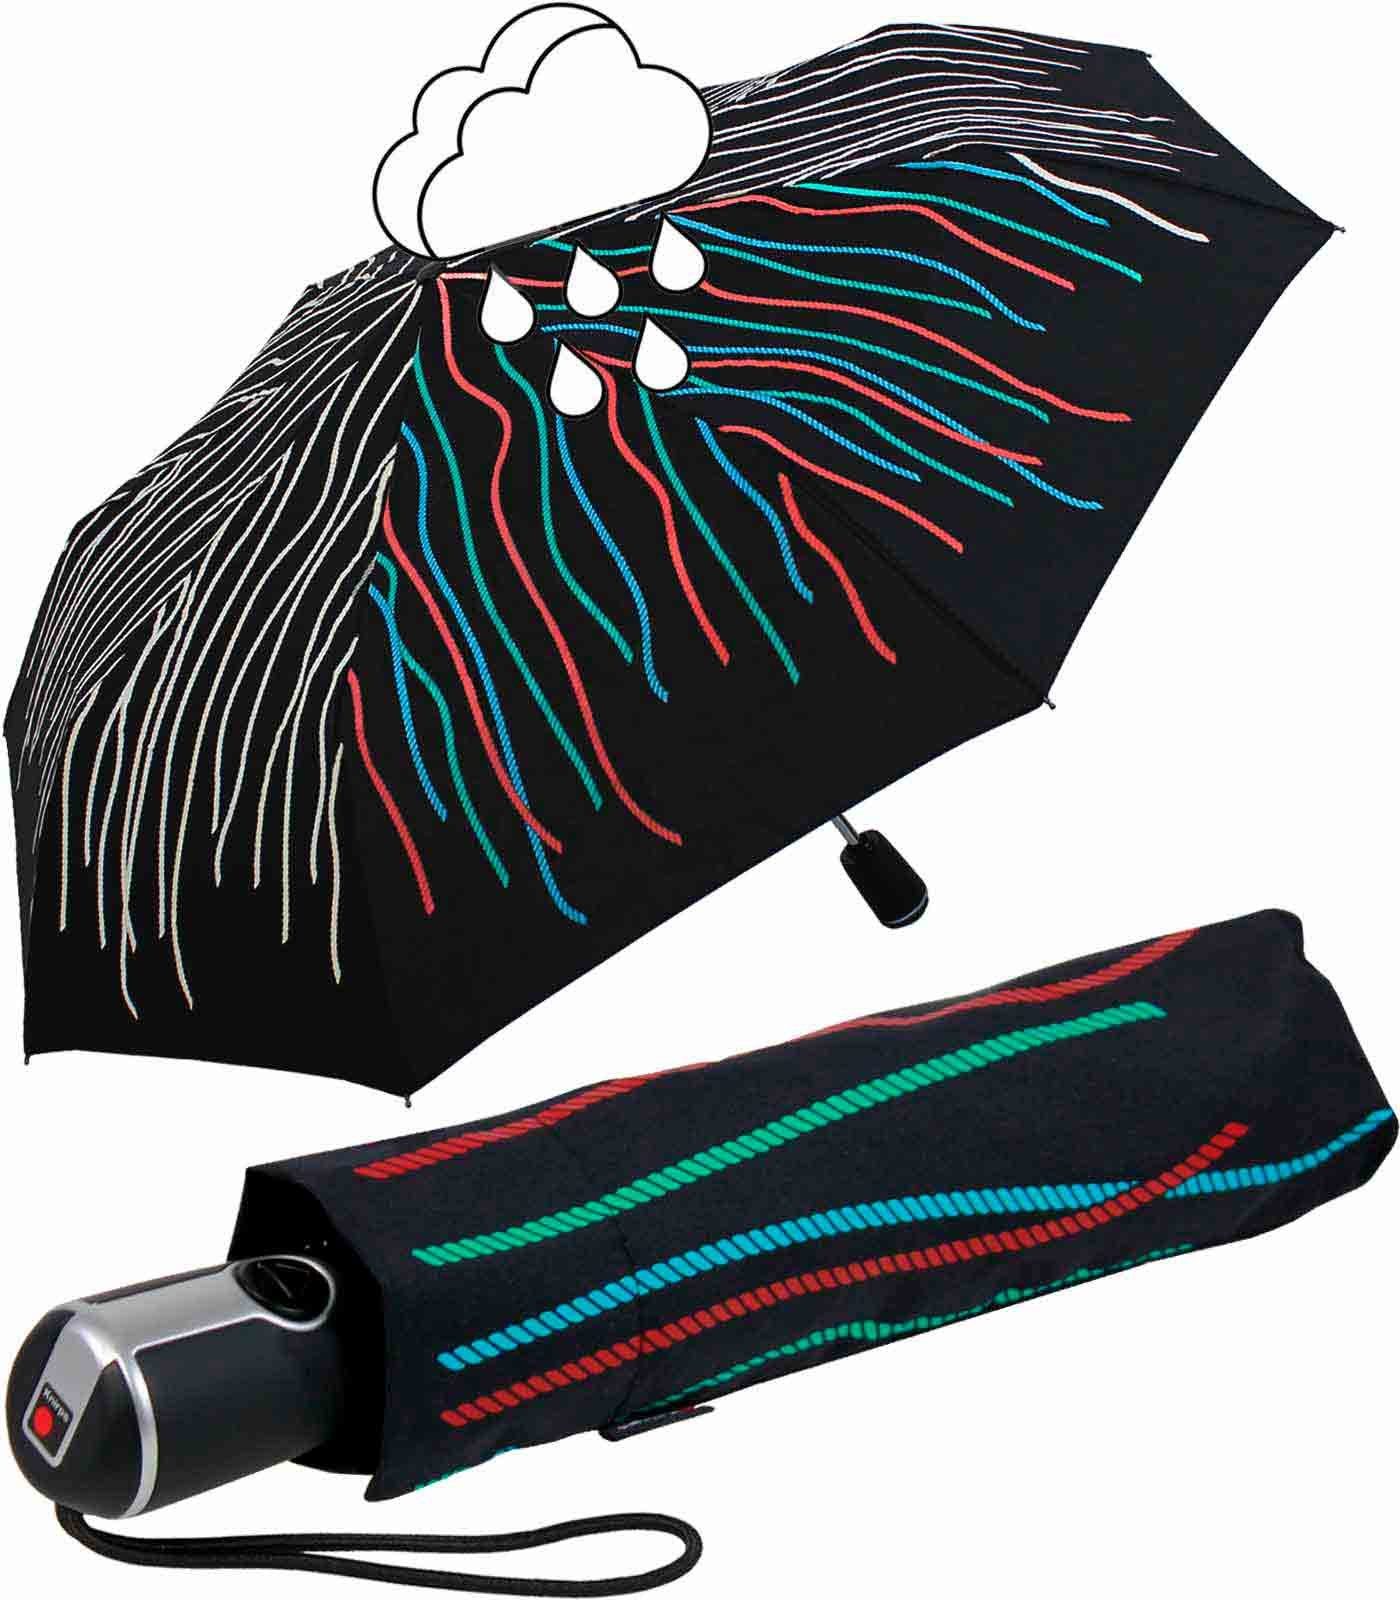 Knirps® Langregenschirm Large Duomatic mit Farbwechsel - Wet Print Rope, bei Nässe färben sich die weißen Fäden bunt schwarz